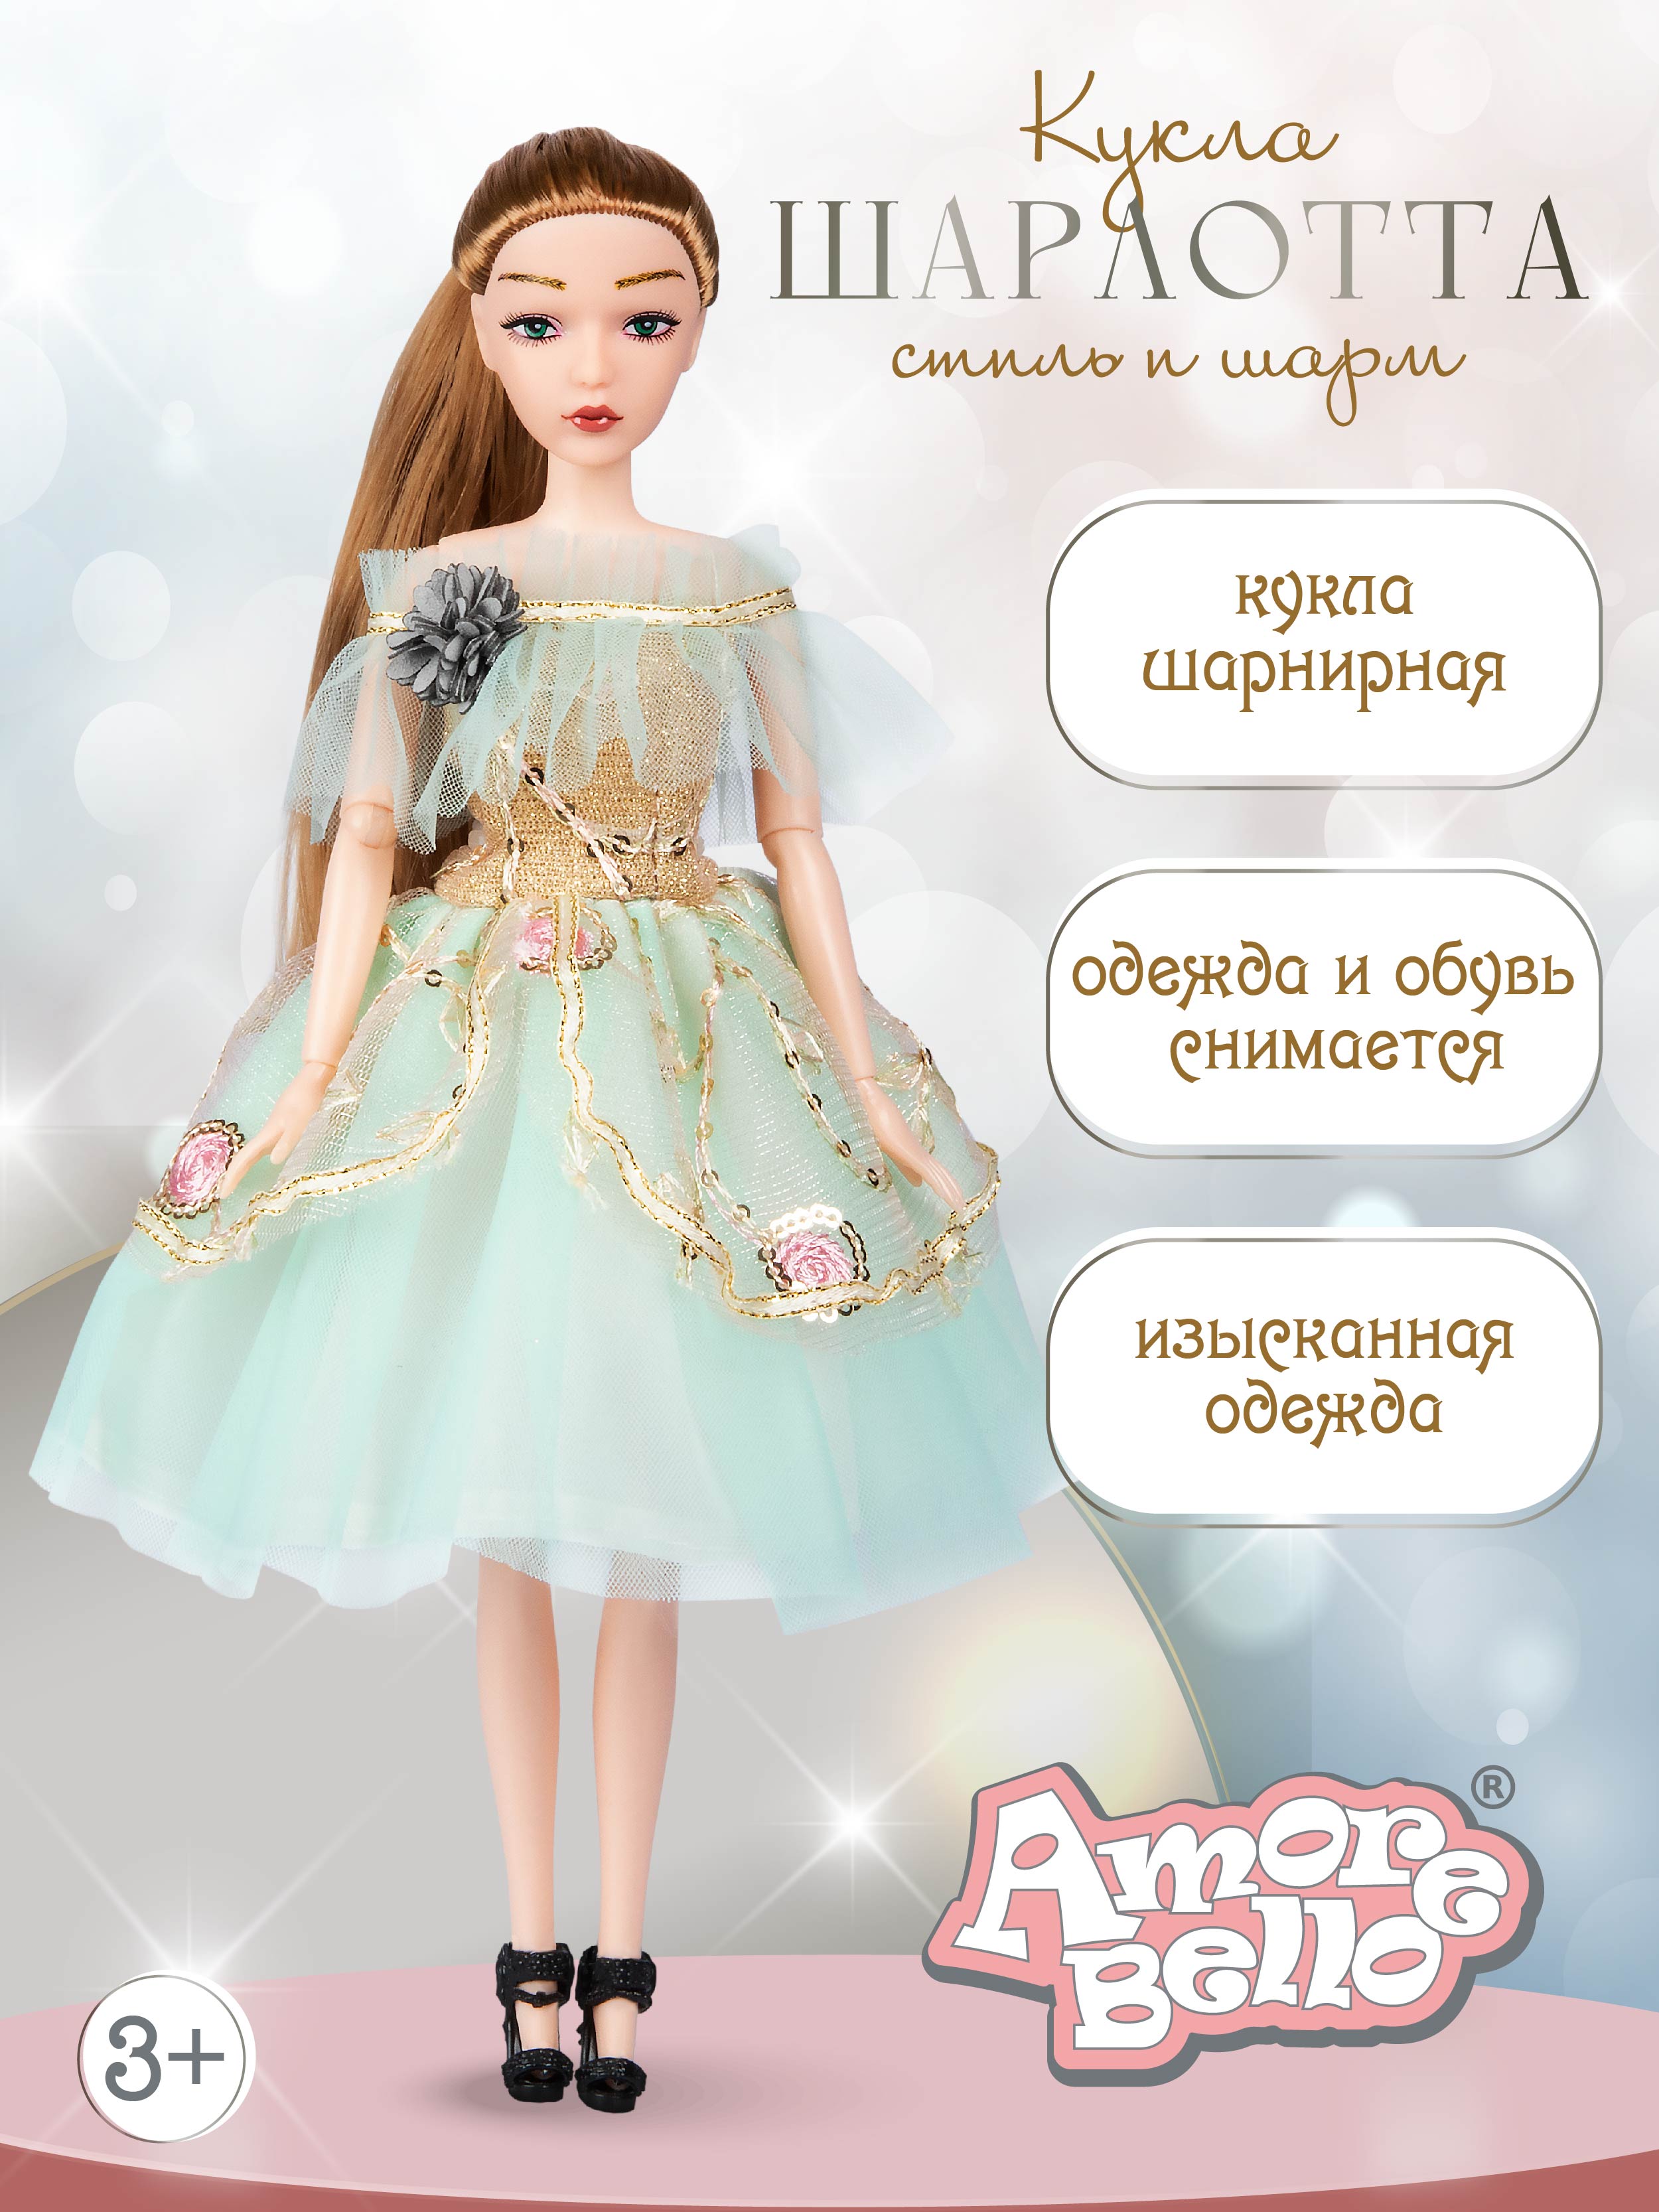 Кукла модельная Шарлота ТМ Amore Bello, подвижные элементы, подарочная упаковка, JB0211289